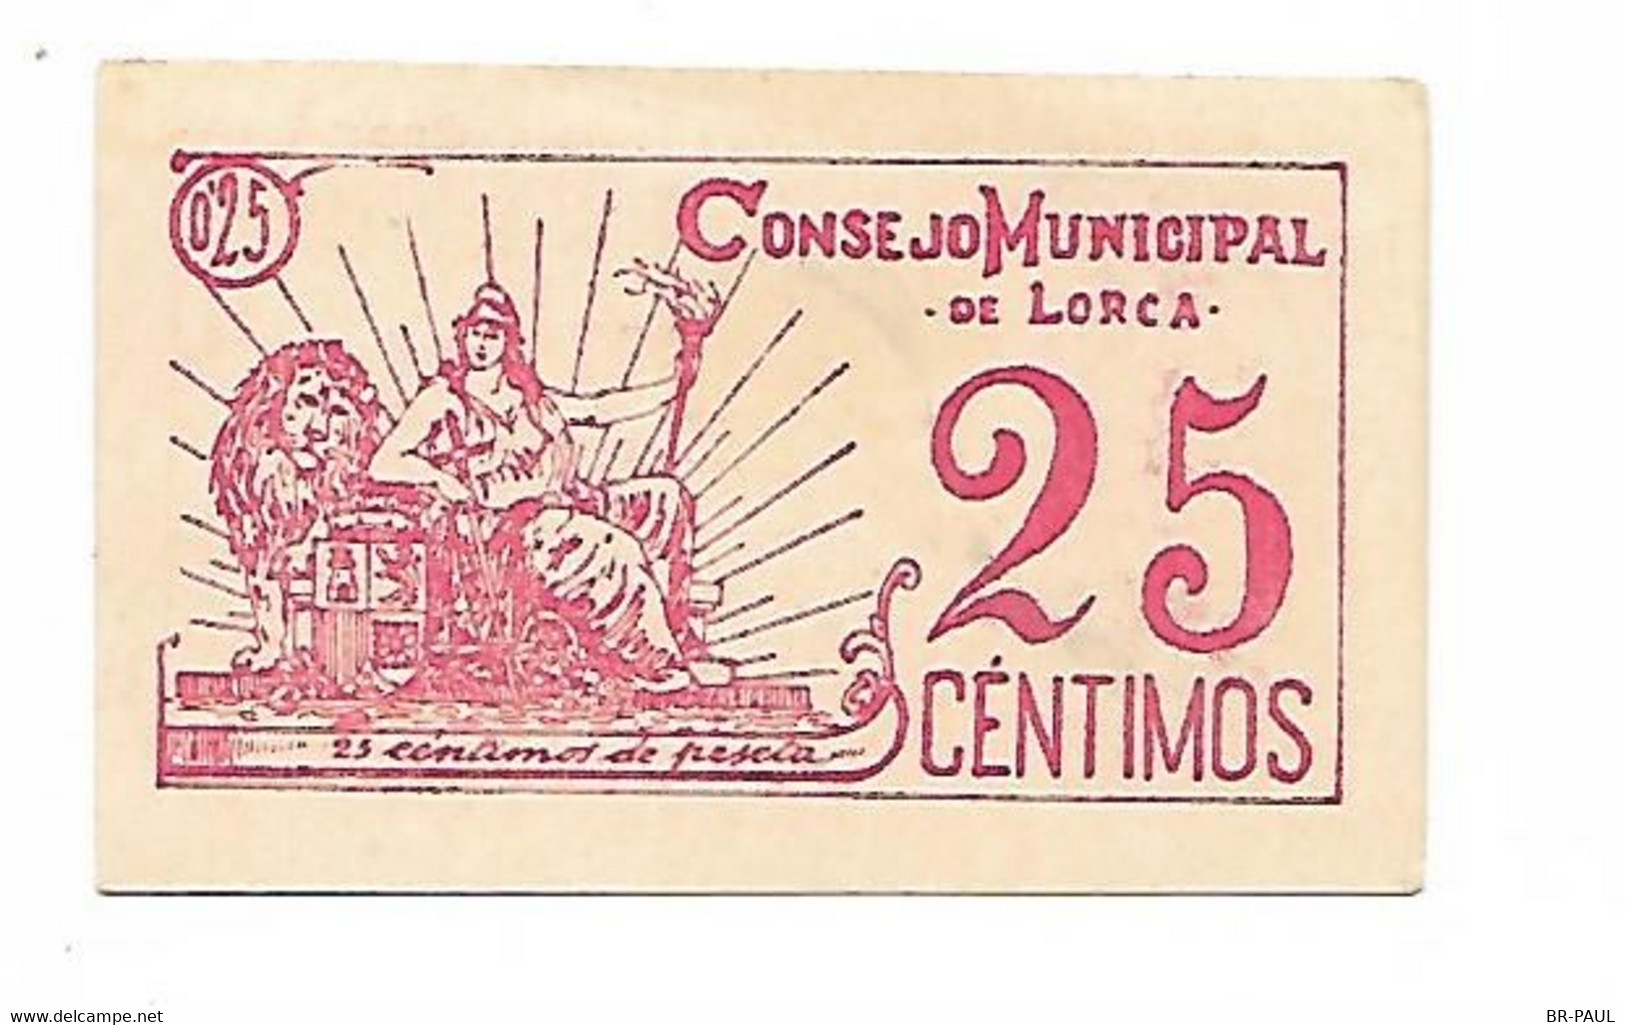 ESPAGNE / VINGT CINQ  CENTIMES 1937 - CONSEJO MUNICIPAL DE LORCA / BILLET NEUF - 1-2 Pesetas